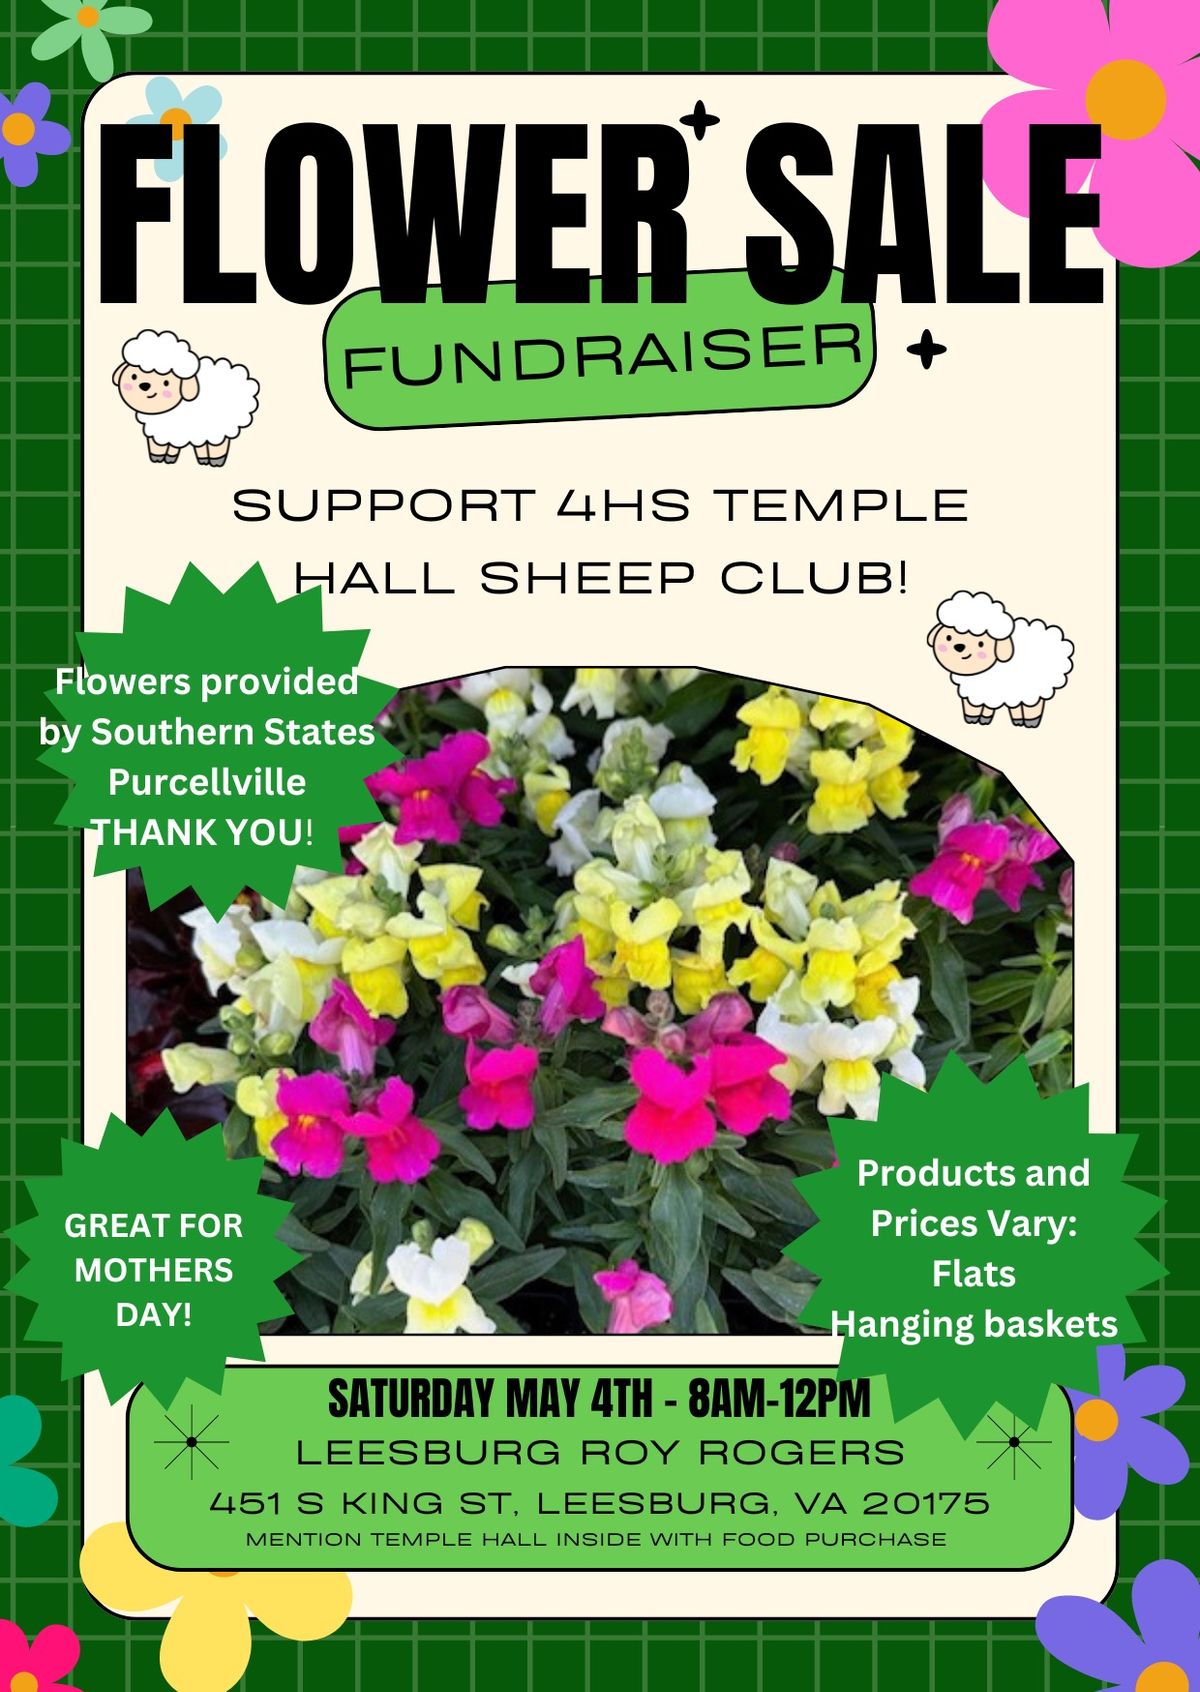 Flower Sale Fundraiser 